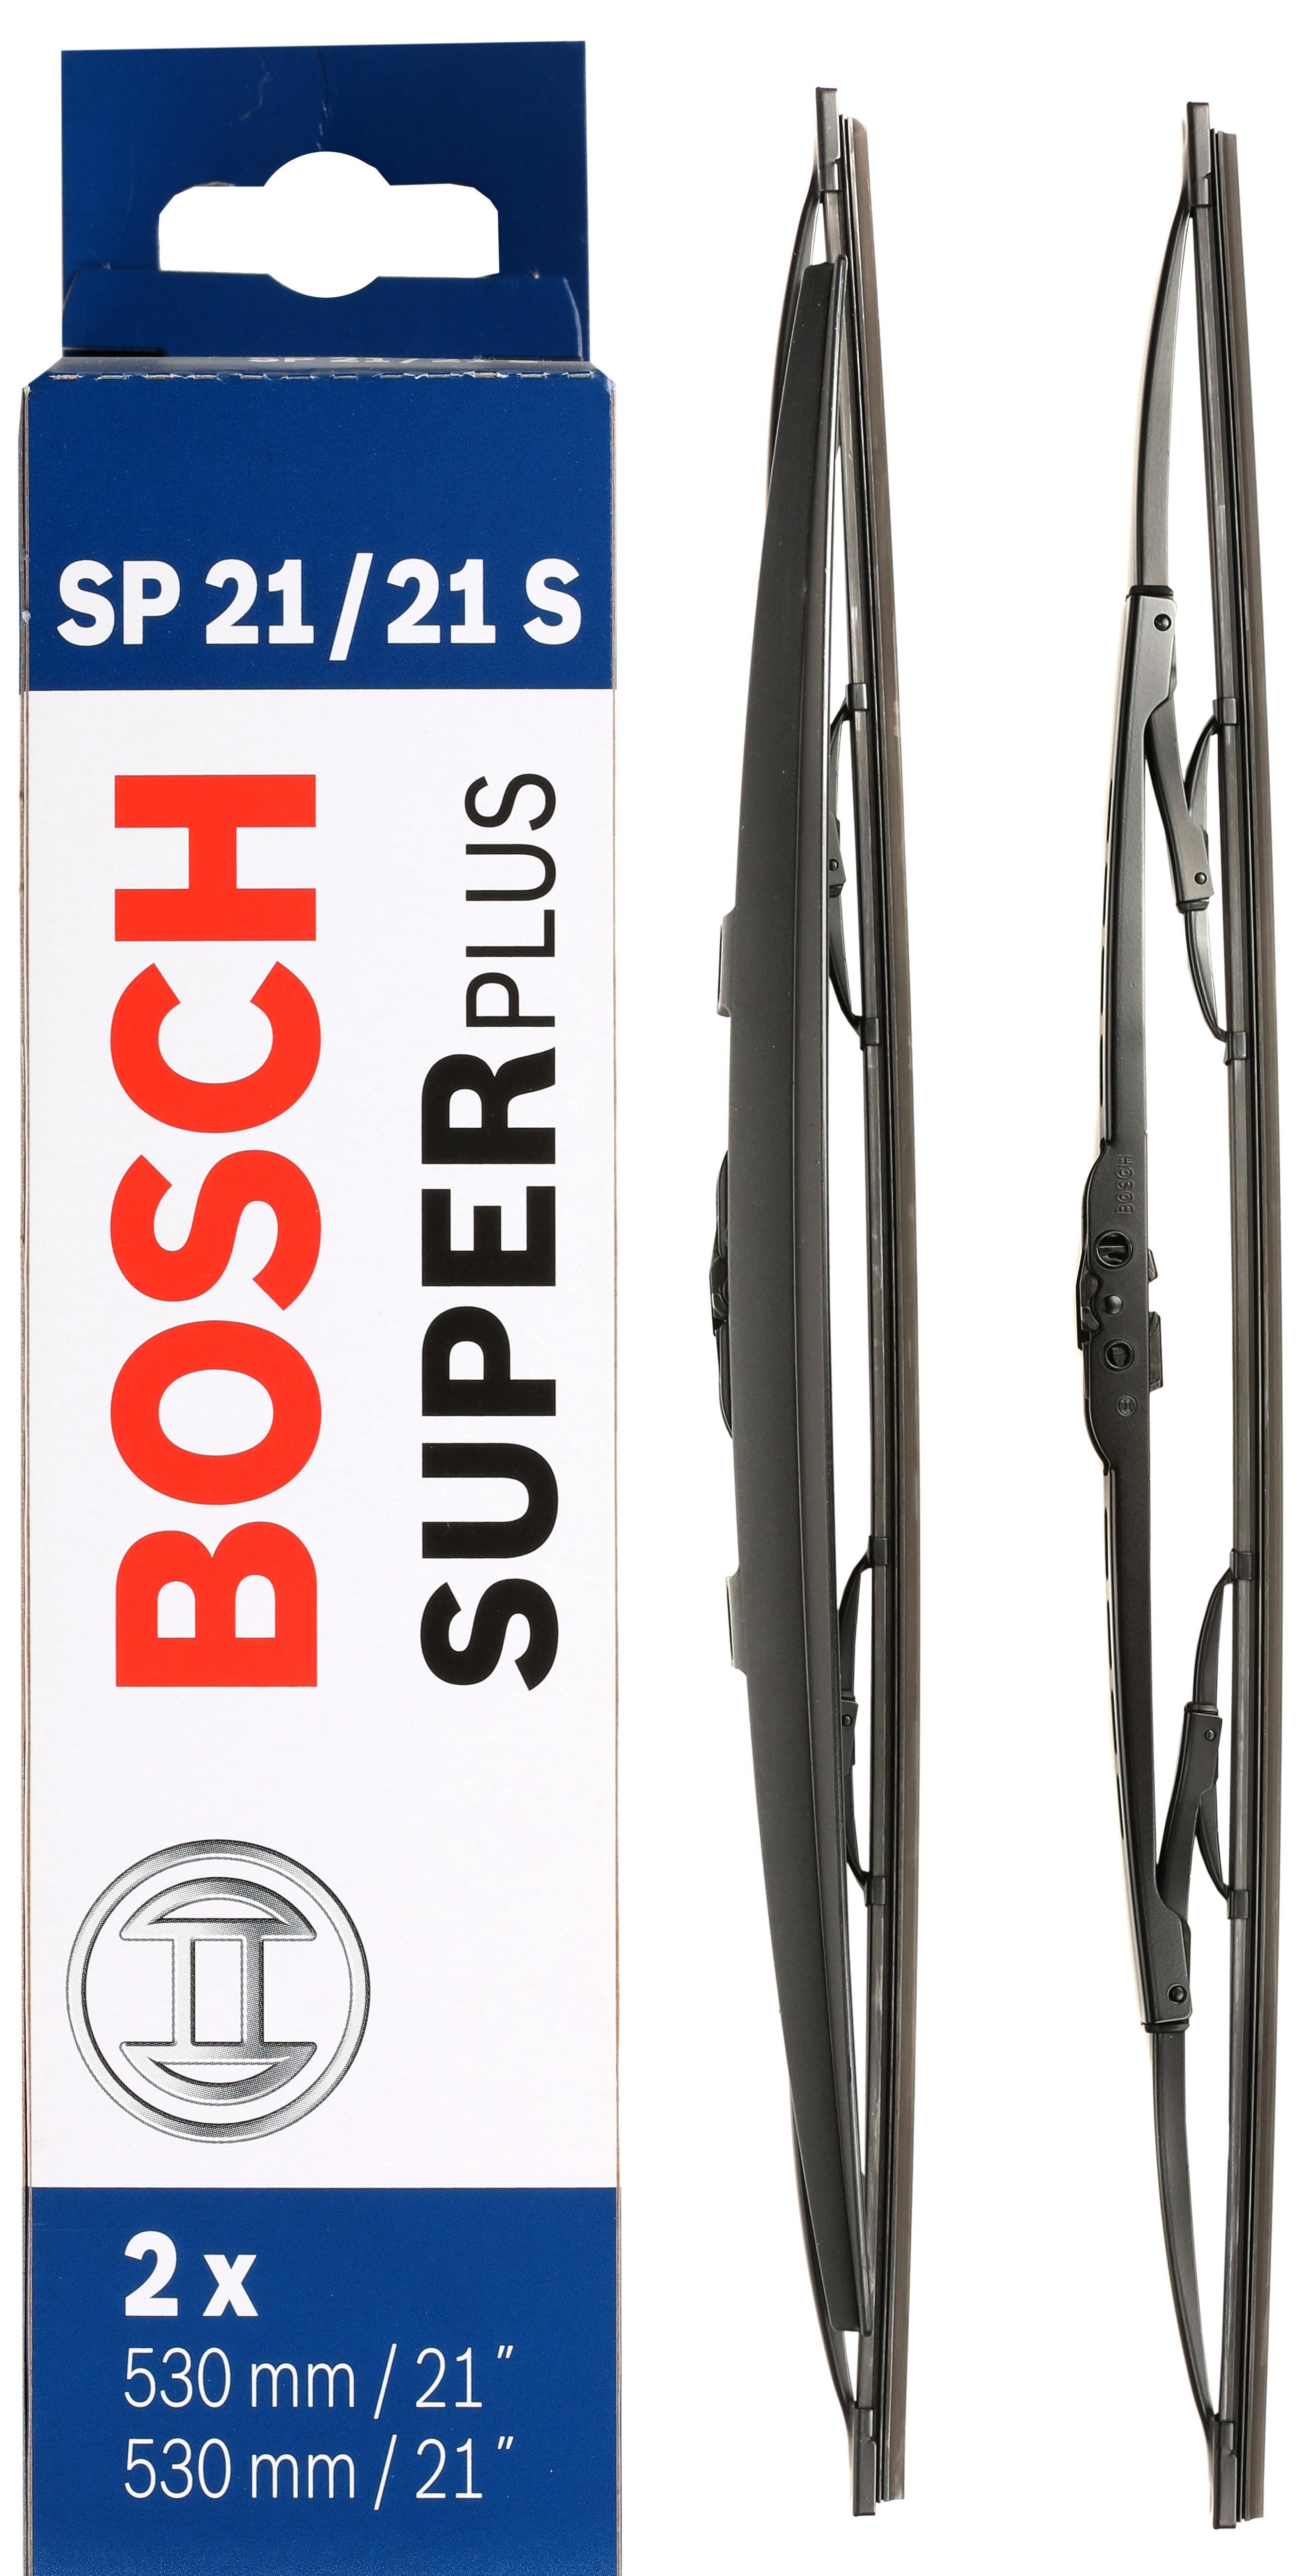 Bosch Sp21/21S Wiper Blades - Front Pair